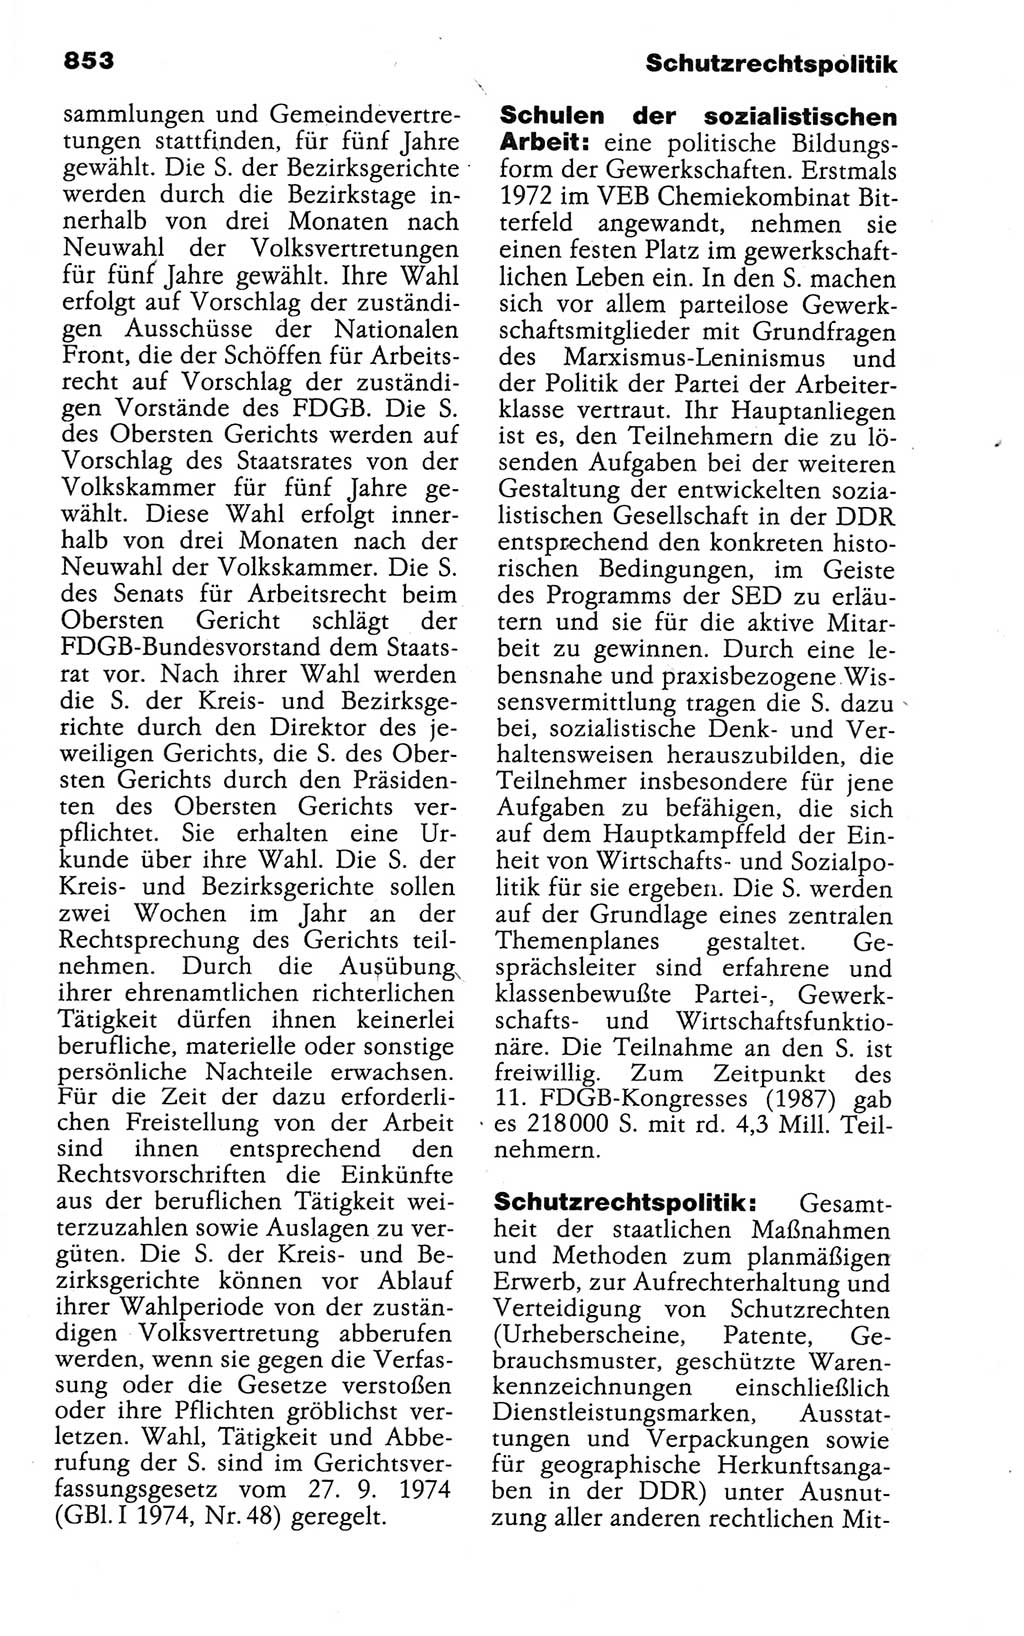 Kleines politisches Wörterbuch [Deutsche Demokratische Republik (DDR)] 1988, Seite 853 (Kl. pol. Wb. DDR 1988, S. 853)